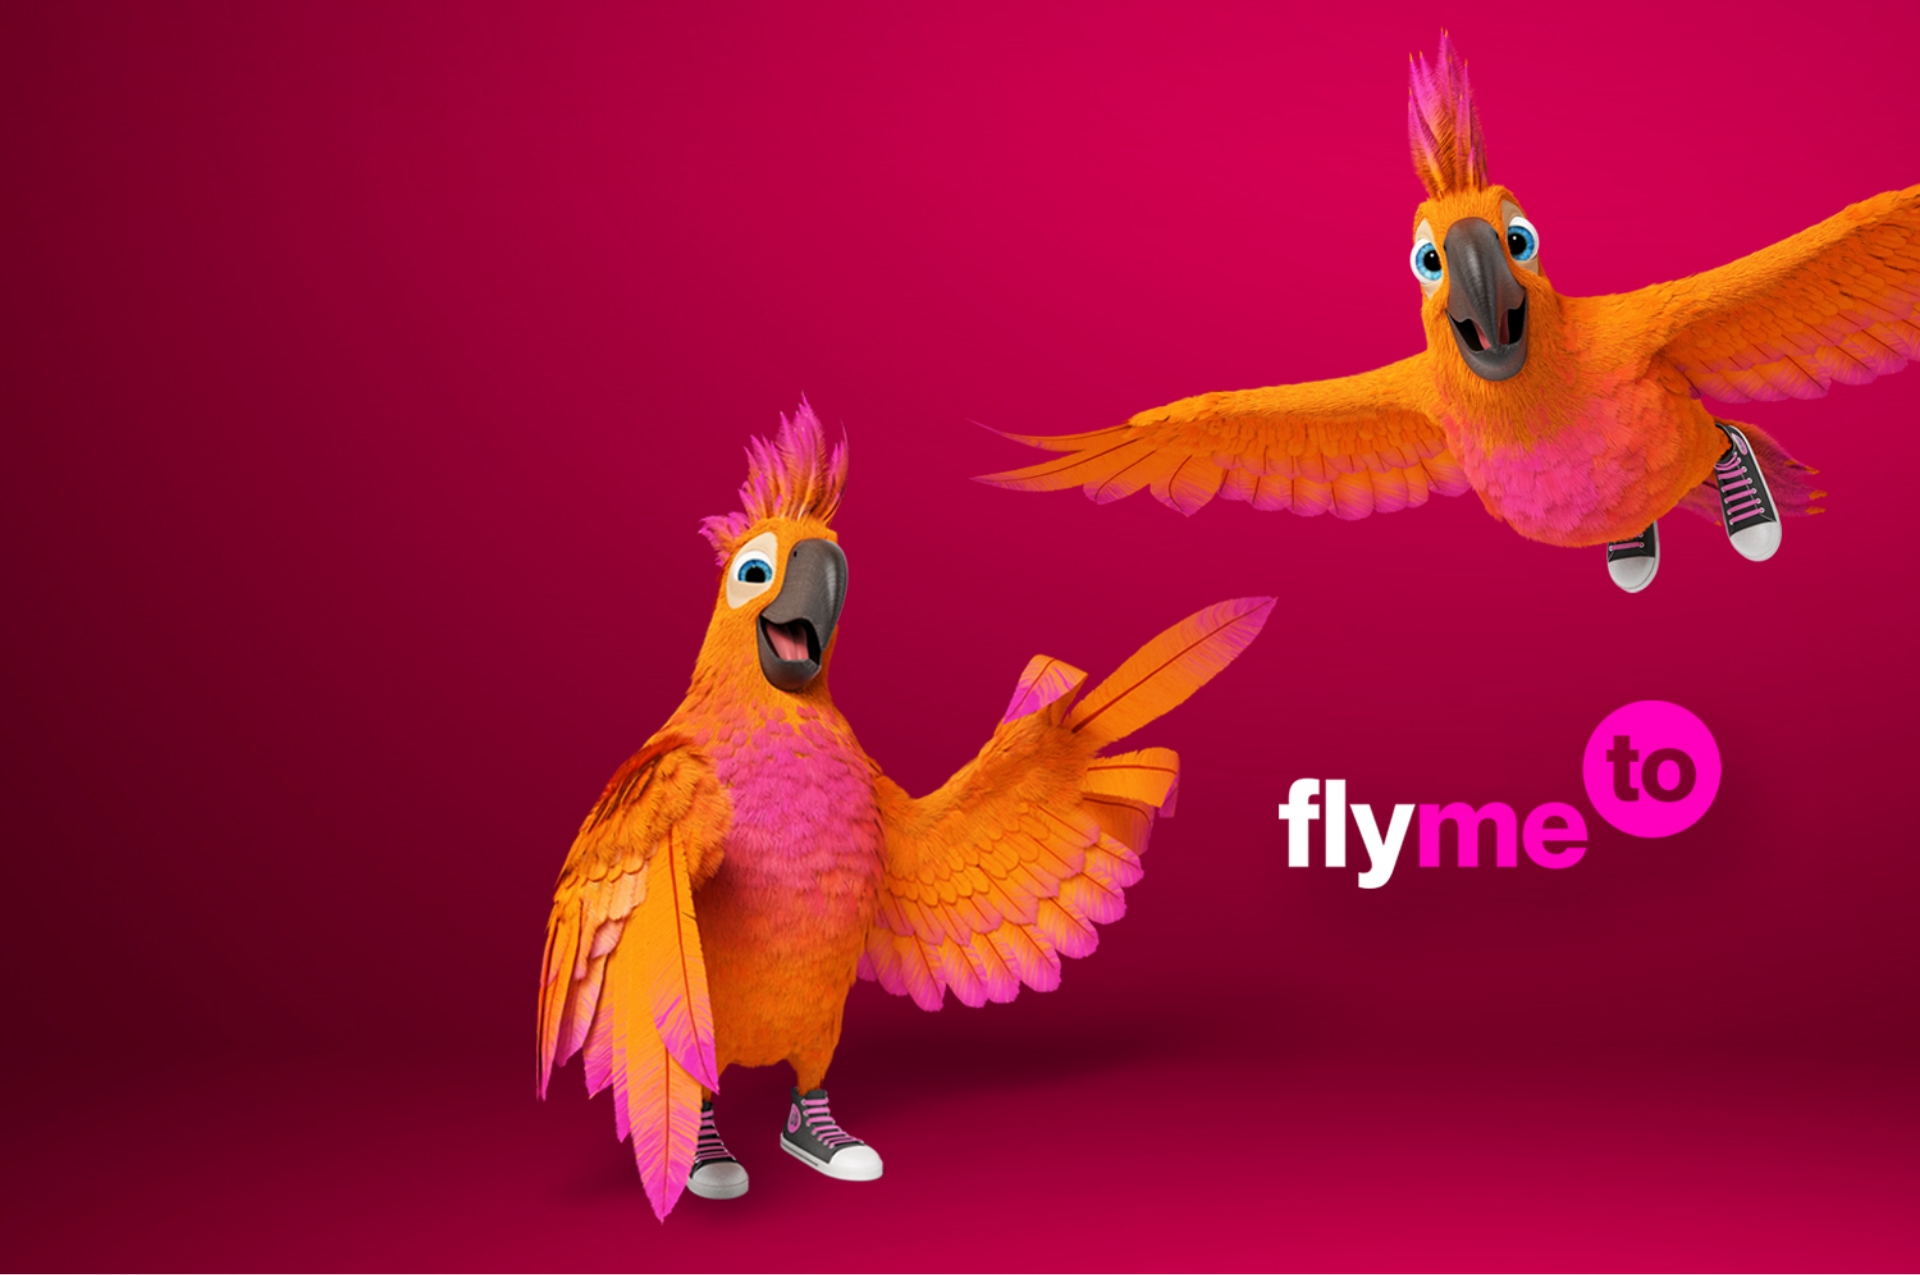 Flymeto - Kompletní vizuální identita včetně názvu společnosti a webového rozhraní